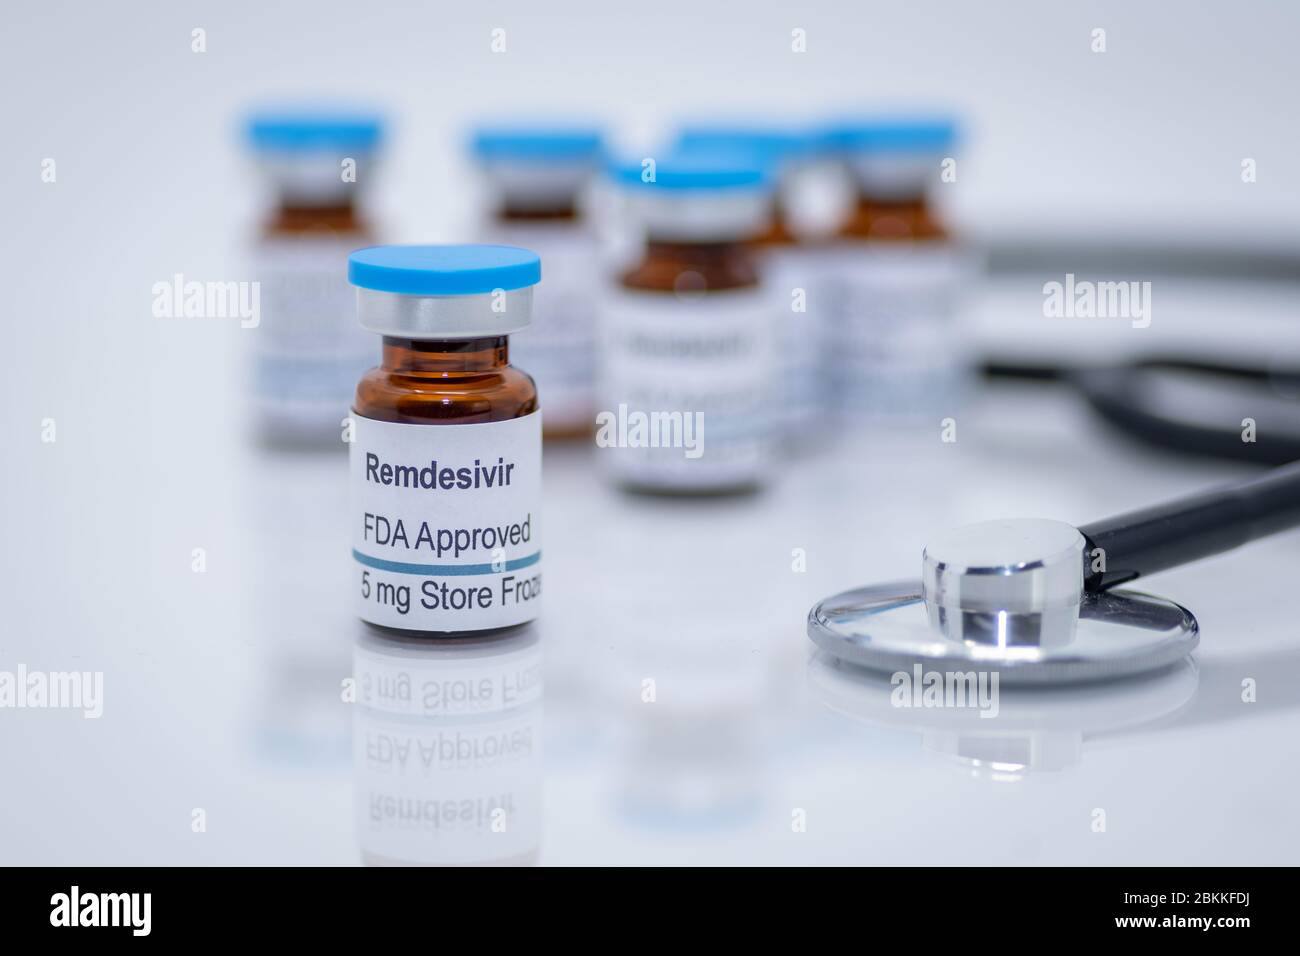 Remdesivir antivirales Medikament, das von der FDA für die Behandlung der neuen COVID-19-Pandemie zugelassen wurde Stockfoto